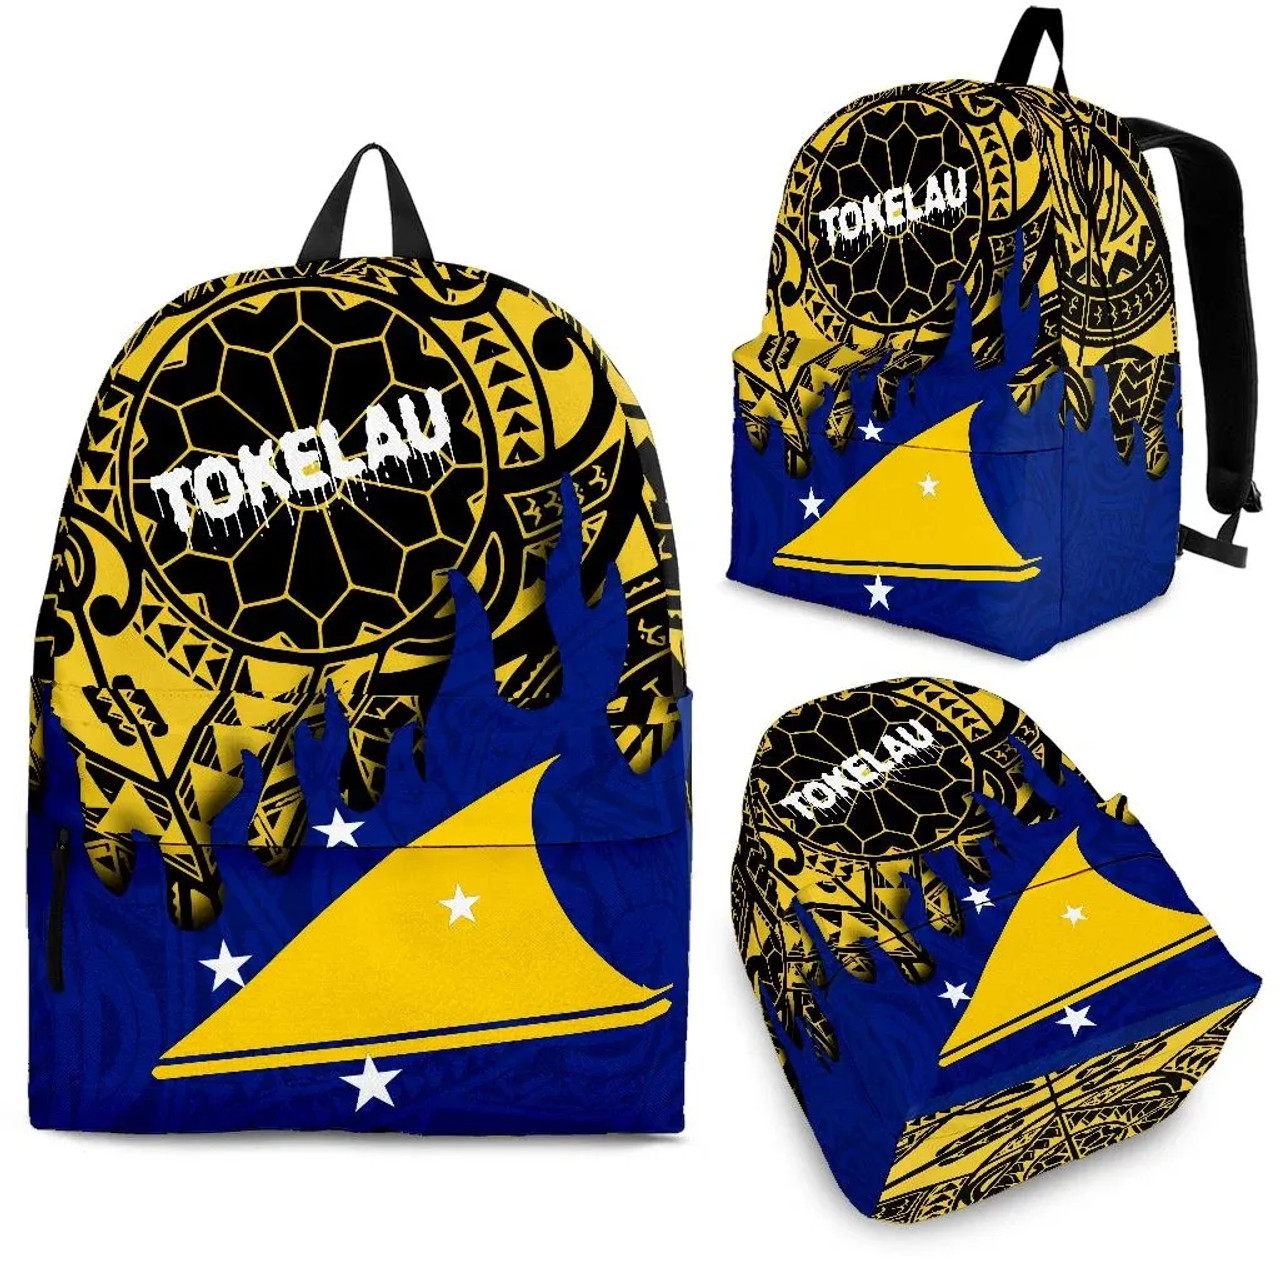 Tokelau Backpack - Melting Style 1